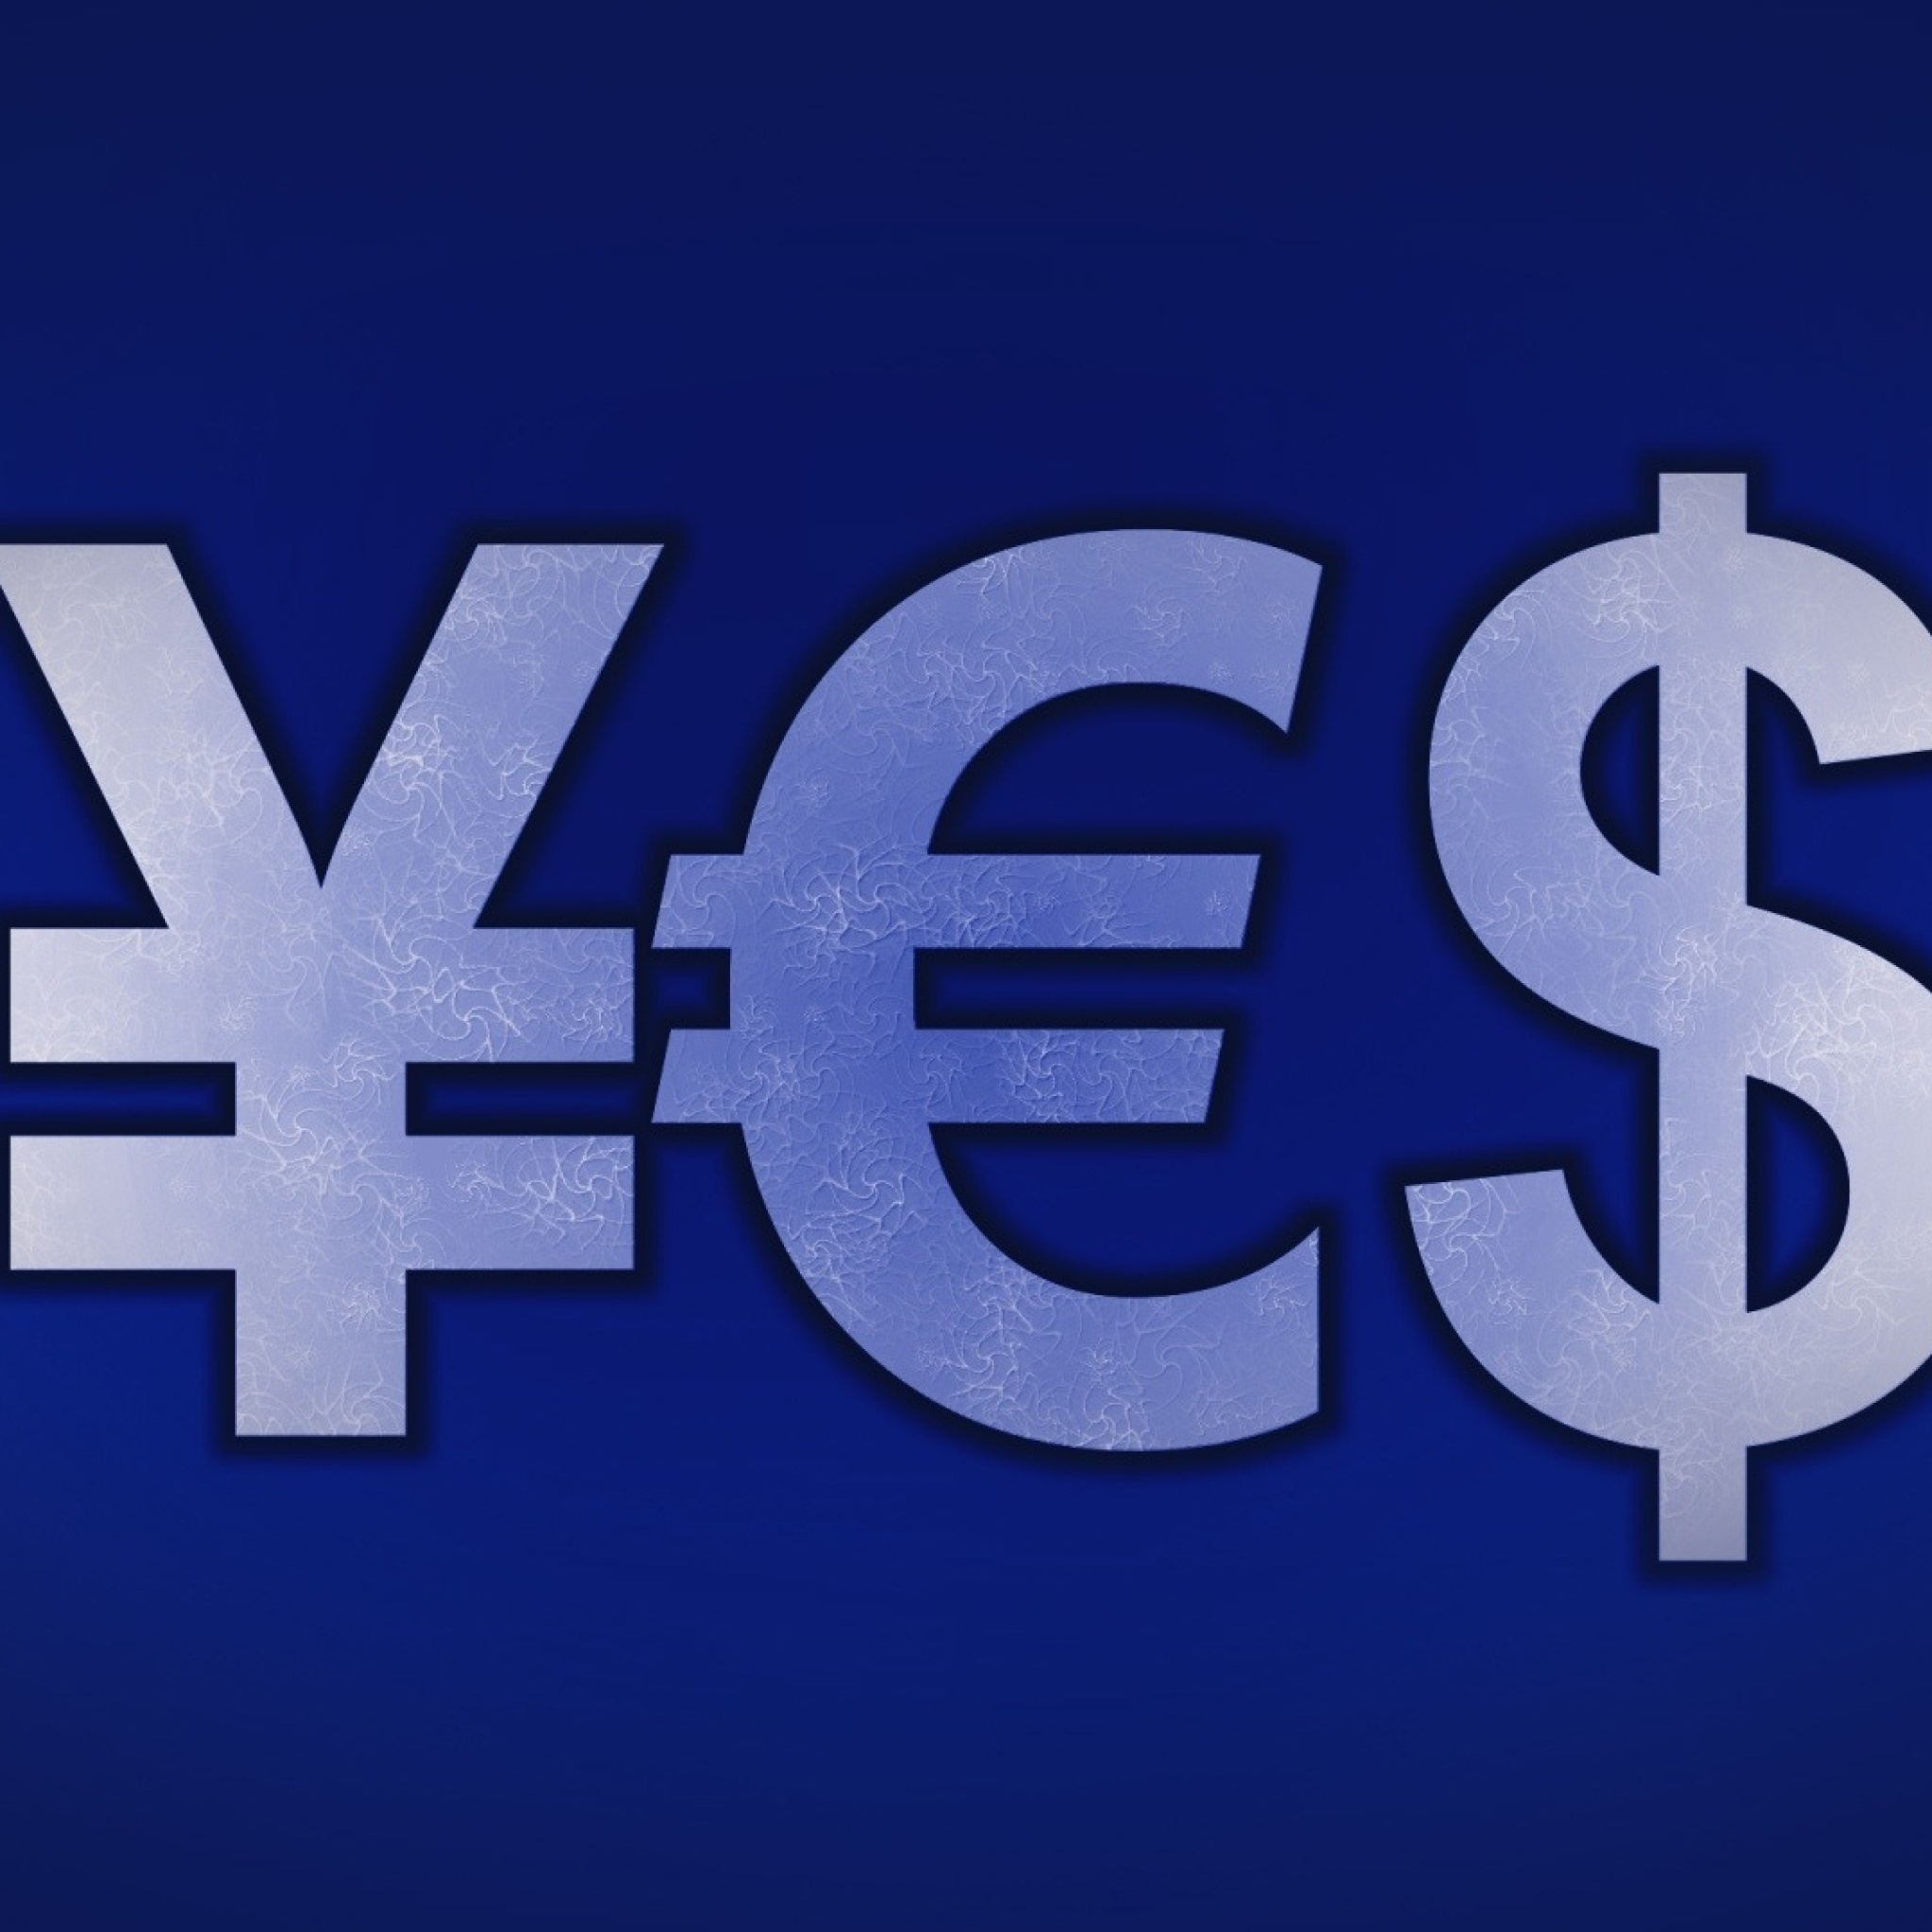 Japanese Yen, Euro, Dollar Symbol screenshot #1 2048x2048